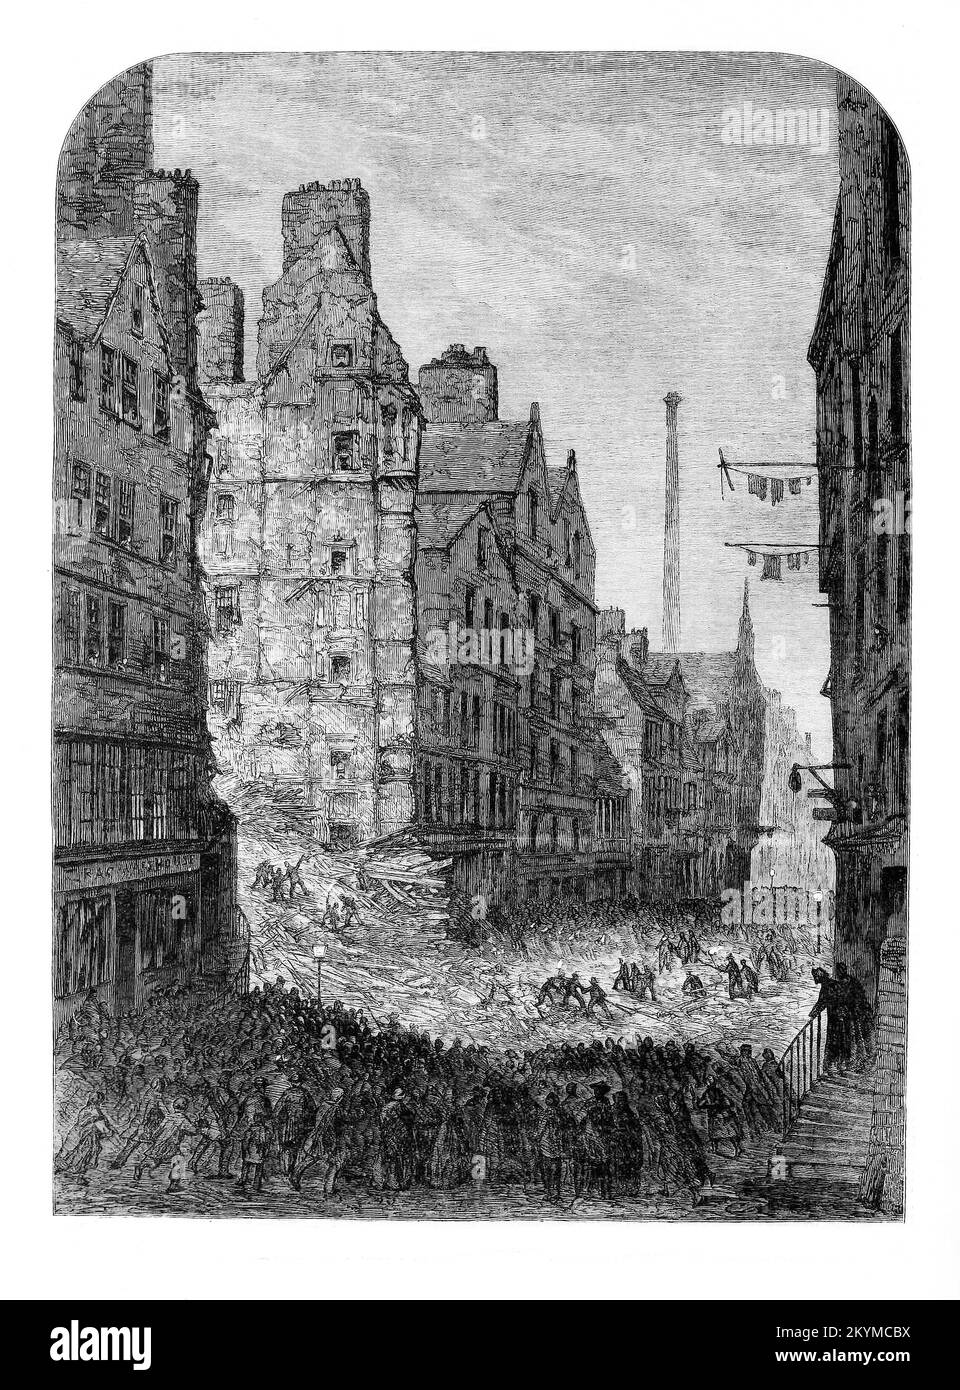 Il crollo di un inquilino di Edimburgo con perdita di vite umane nel novembre 1861. Da 77 occupanti, 35 sono morti o sono morti in ospedale per le loro lesioni. L'edificio a sette piani di 250 anni era composto per lo più da legno, che rovesciò quella fatidica notte si trovava nel cuore della densamente popolata città vecchia di Edimburgo, sul lato nord dell'High Street. Il City Improvement Act fu approvato nel 1867, E alla fine del 19th ° secolo gran parte delle abitazioni medievali della Città Vecchia era scomparso. Foto Stock